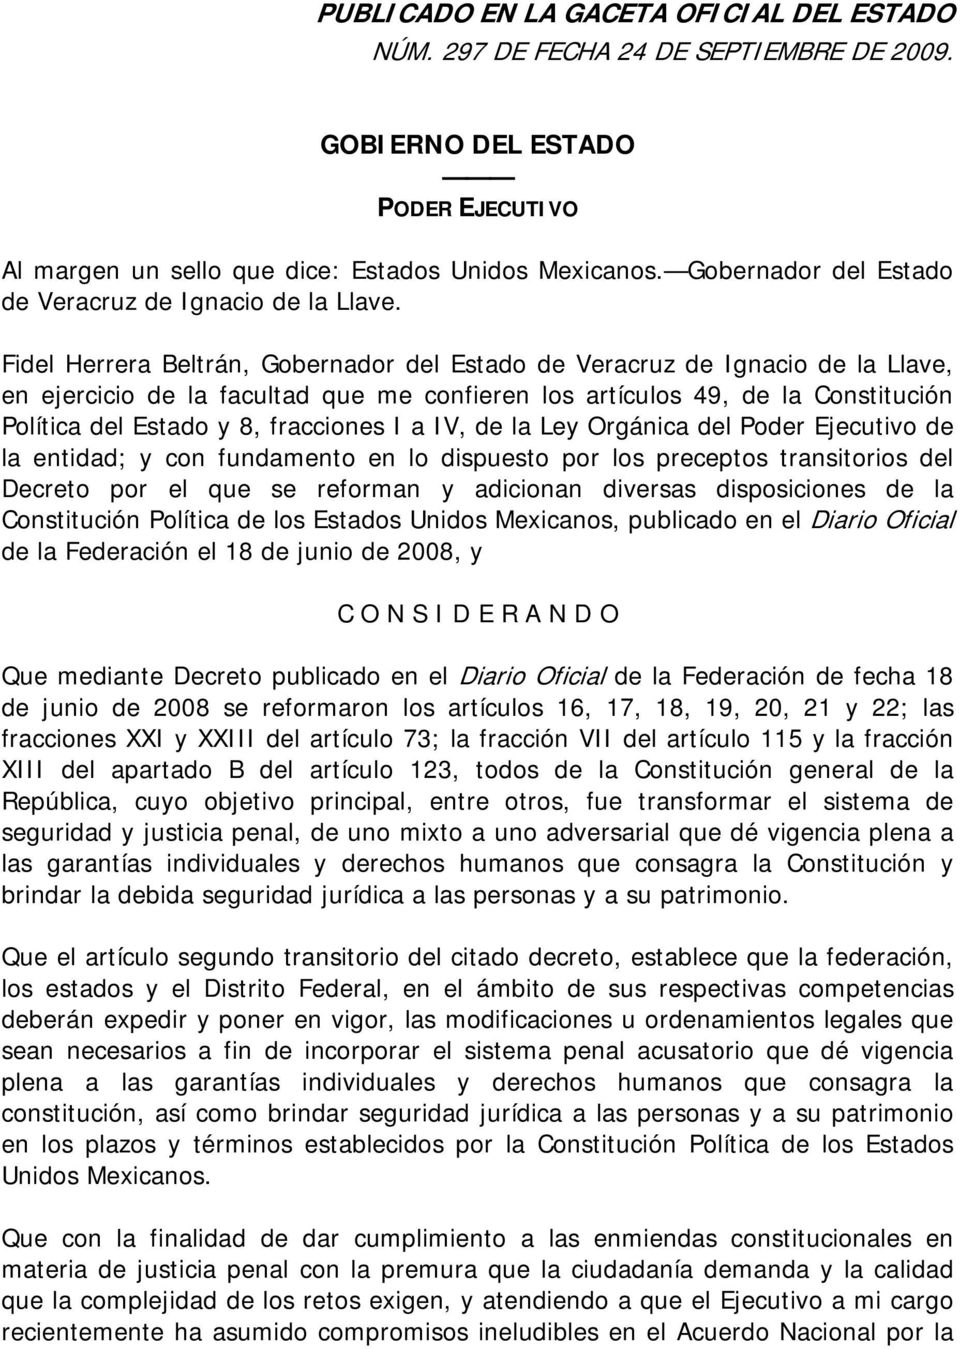 Fidel Herrera Beltrán, Gobernador del Estado de Veracruz de Ignacio de la Llave, en ejercicio de la facultad que me confieren los artículos 49, de la Constitución Política del Estado y 8, fracciones